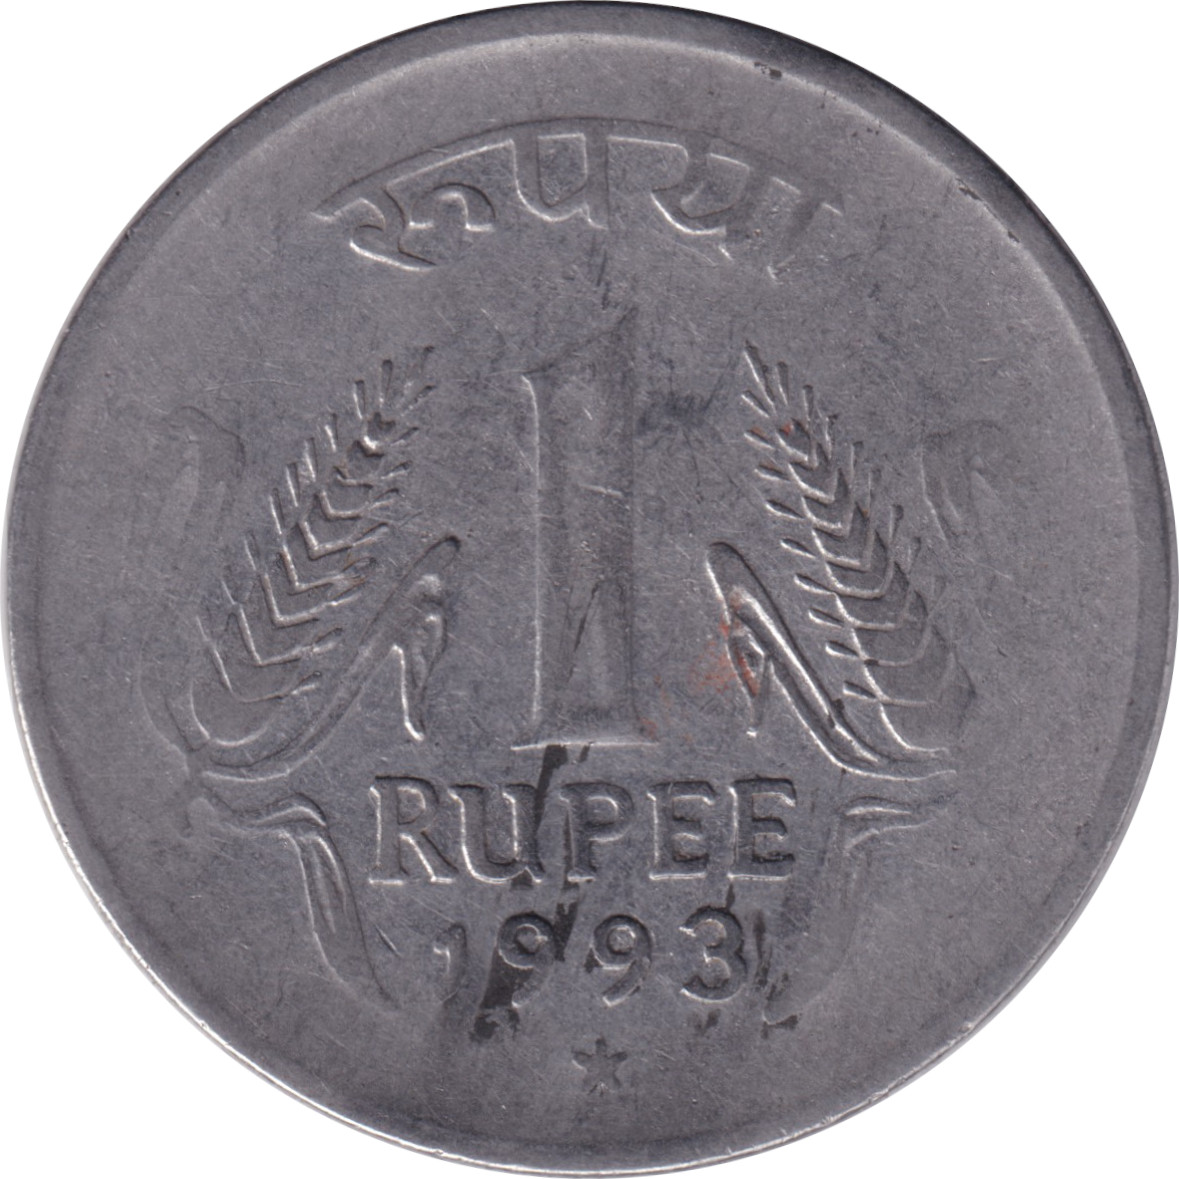 1 rupee - Emblème - Type 3